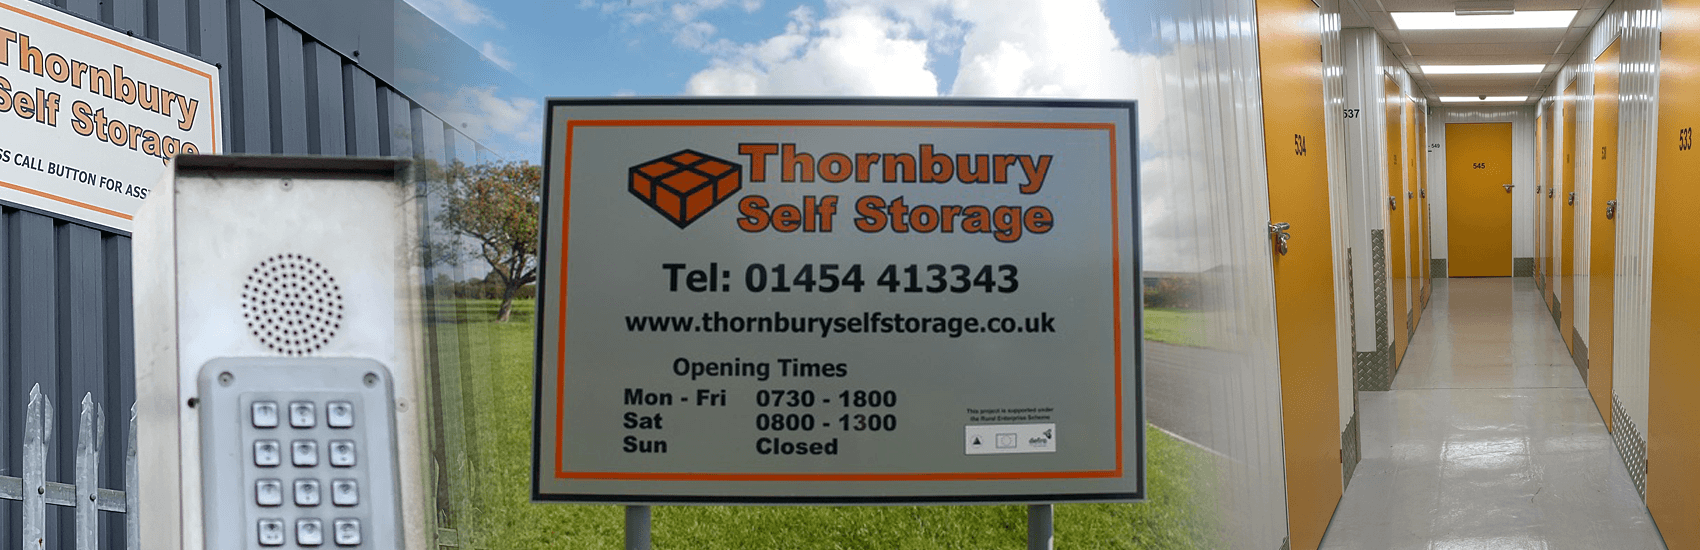 thornbury self storage slider find us